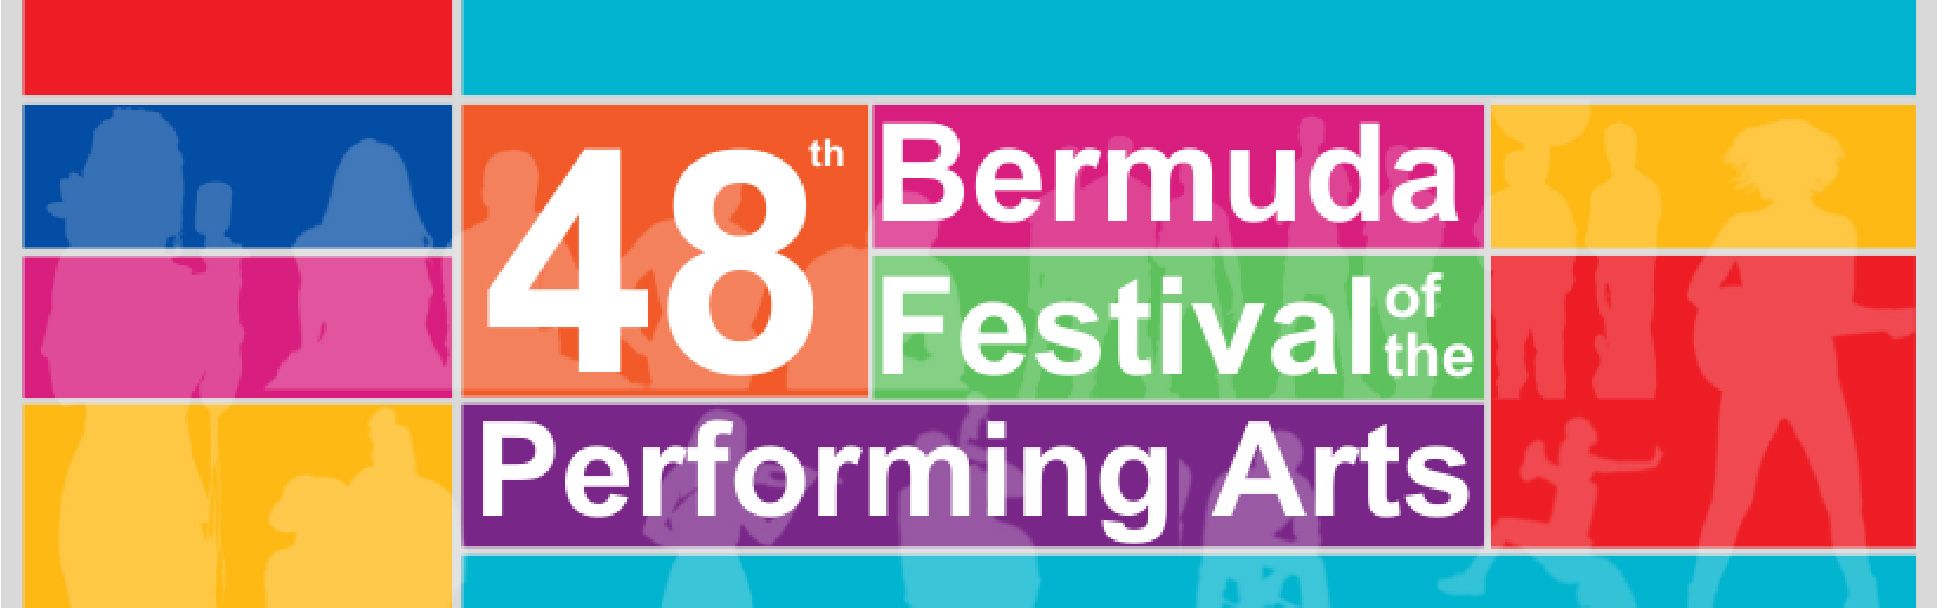 Bermuda Festival header